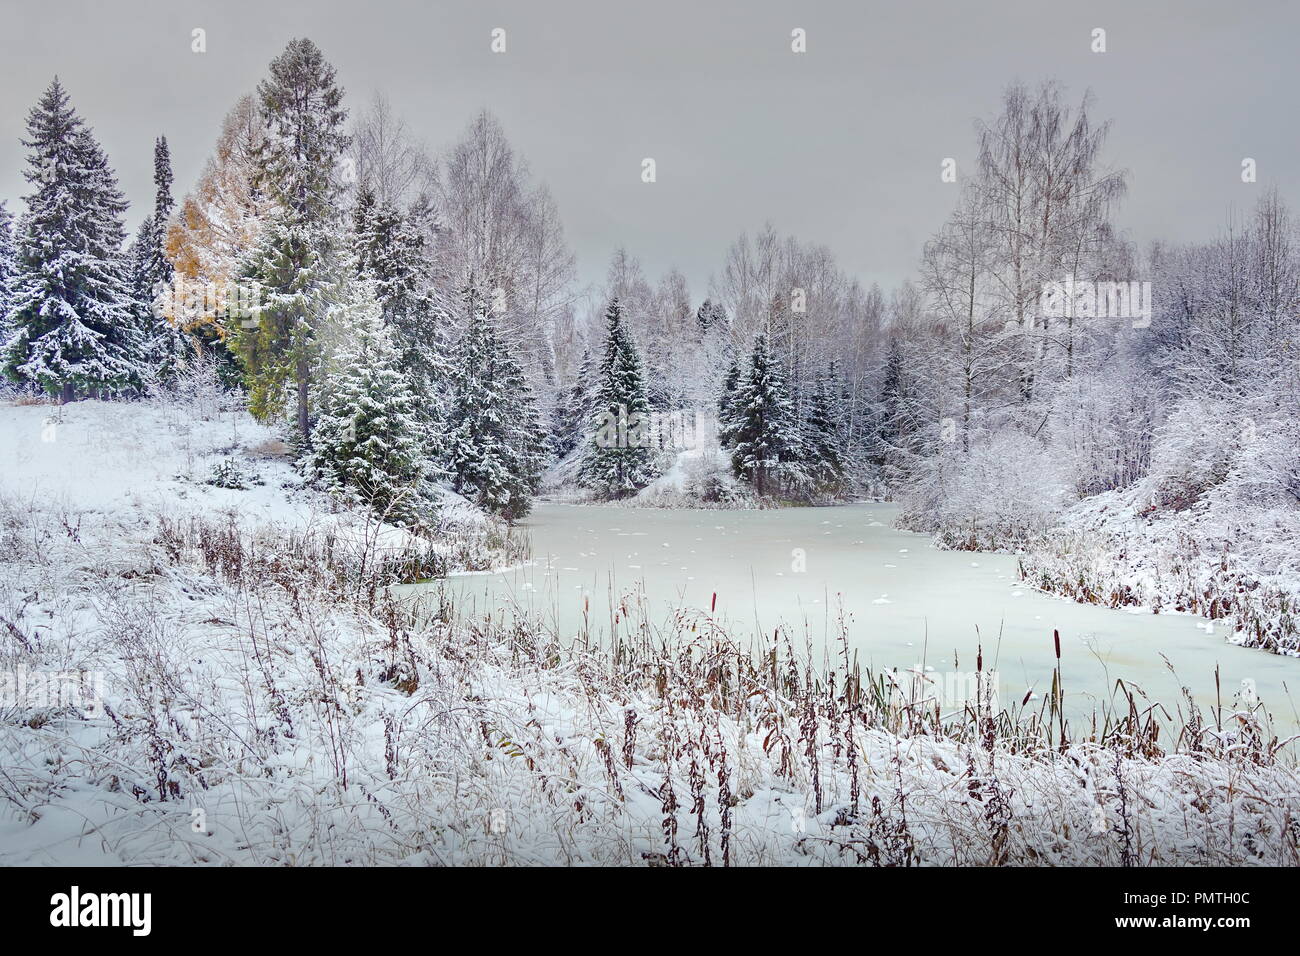 Paysage d'hiver forêt étang gelé début de l'hiver des arbres dans la neige. couleur gris clair blanc neige Banque D'Images